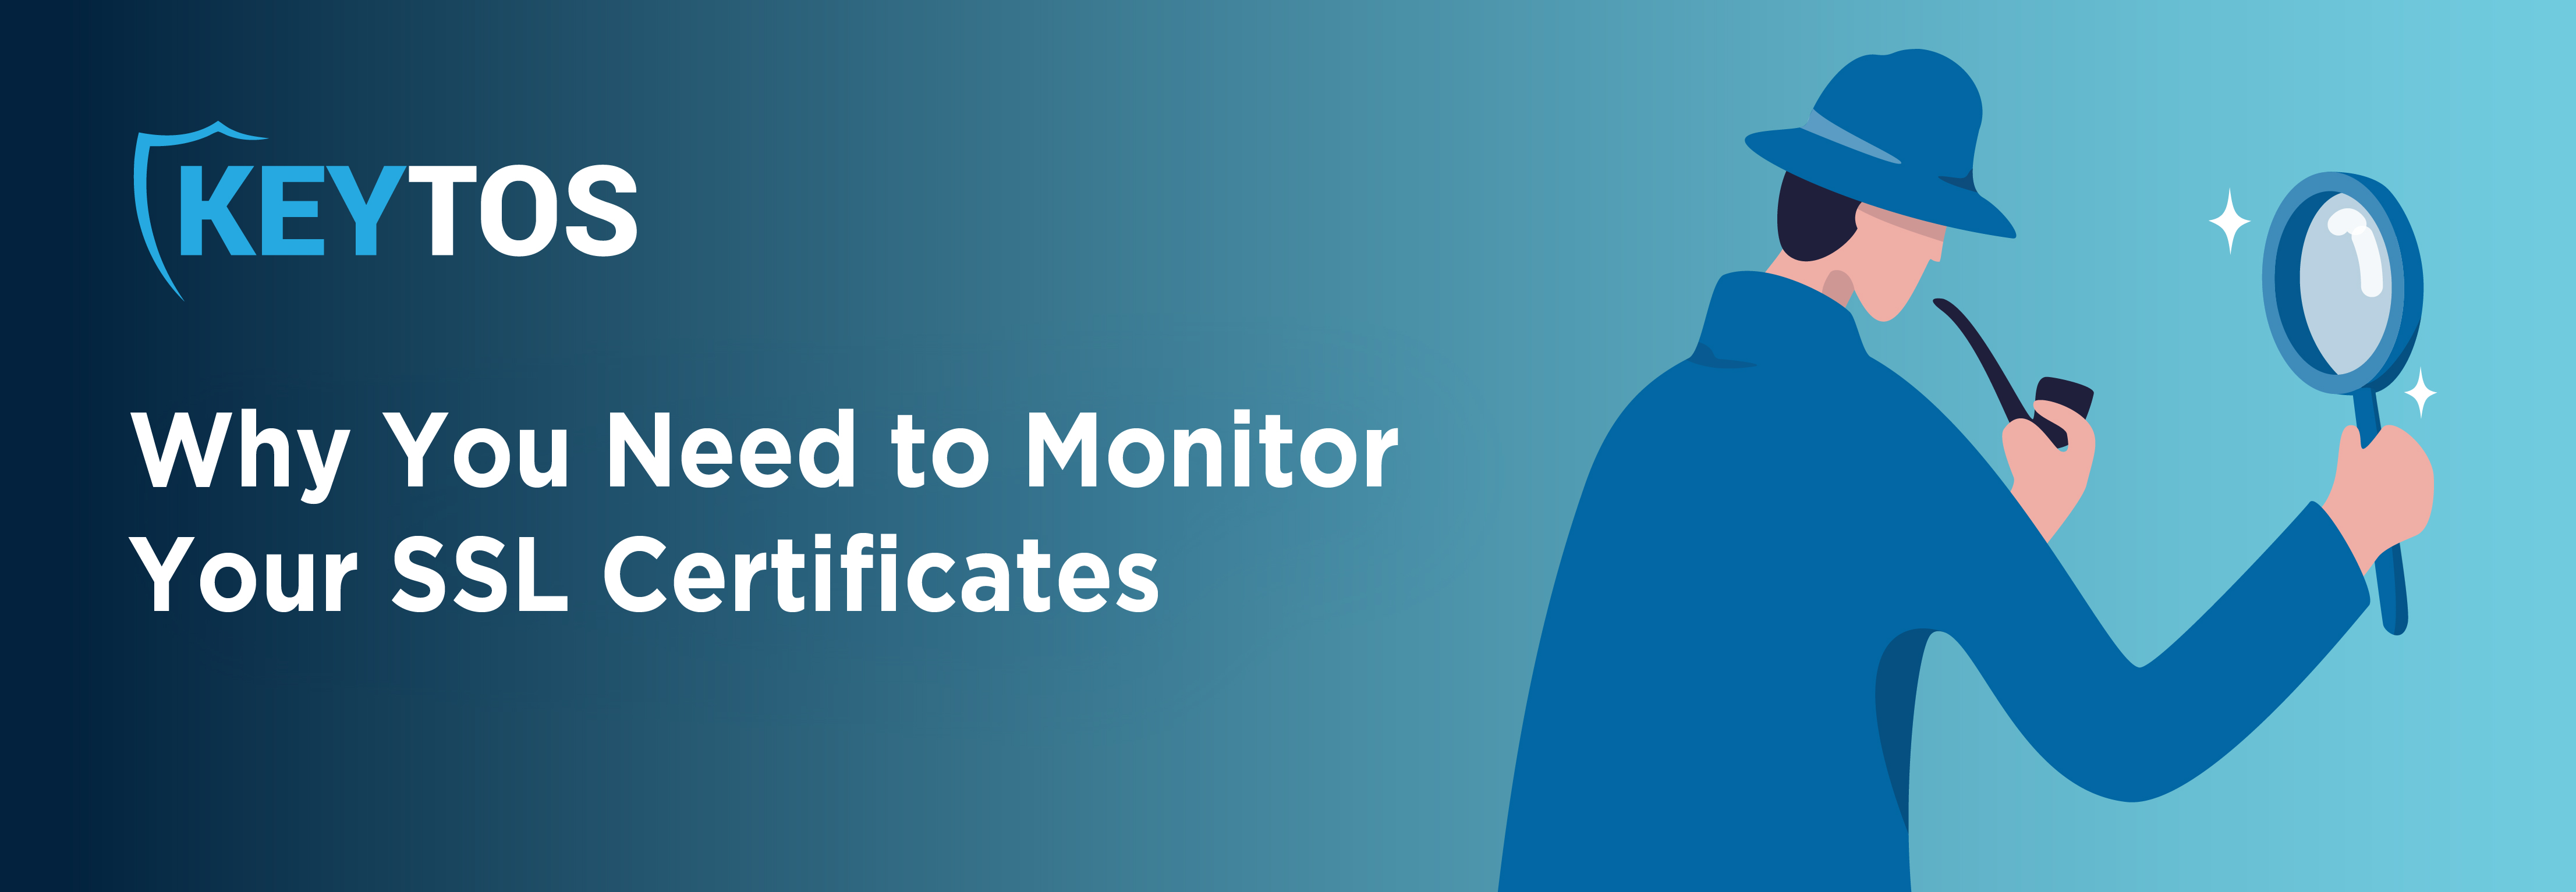 Por qué necesita monitorear sus certificados SSL